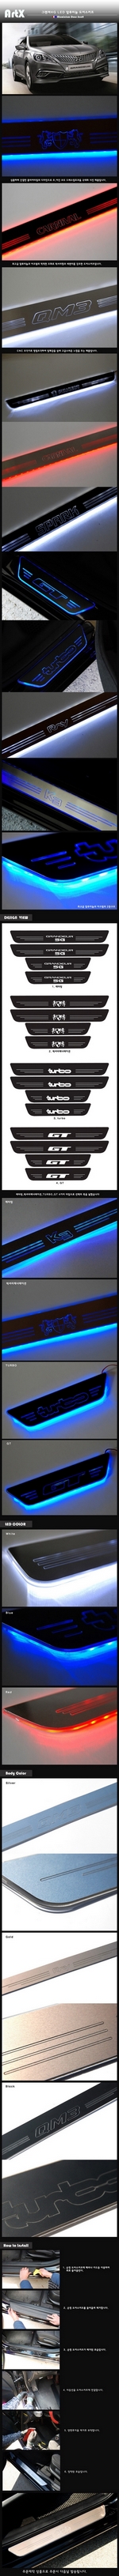 Накладки на пороги алюминиевые с подсветкой (вариант 2) ArtX Hyundai Grandeur HG 2011-2019